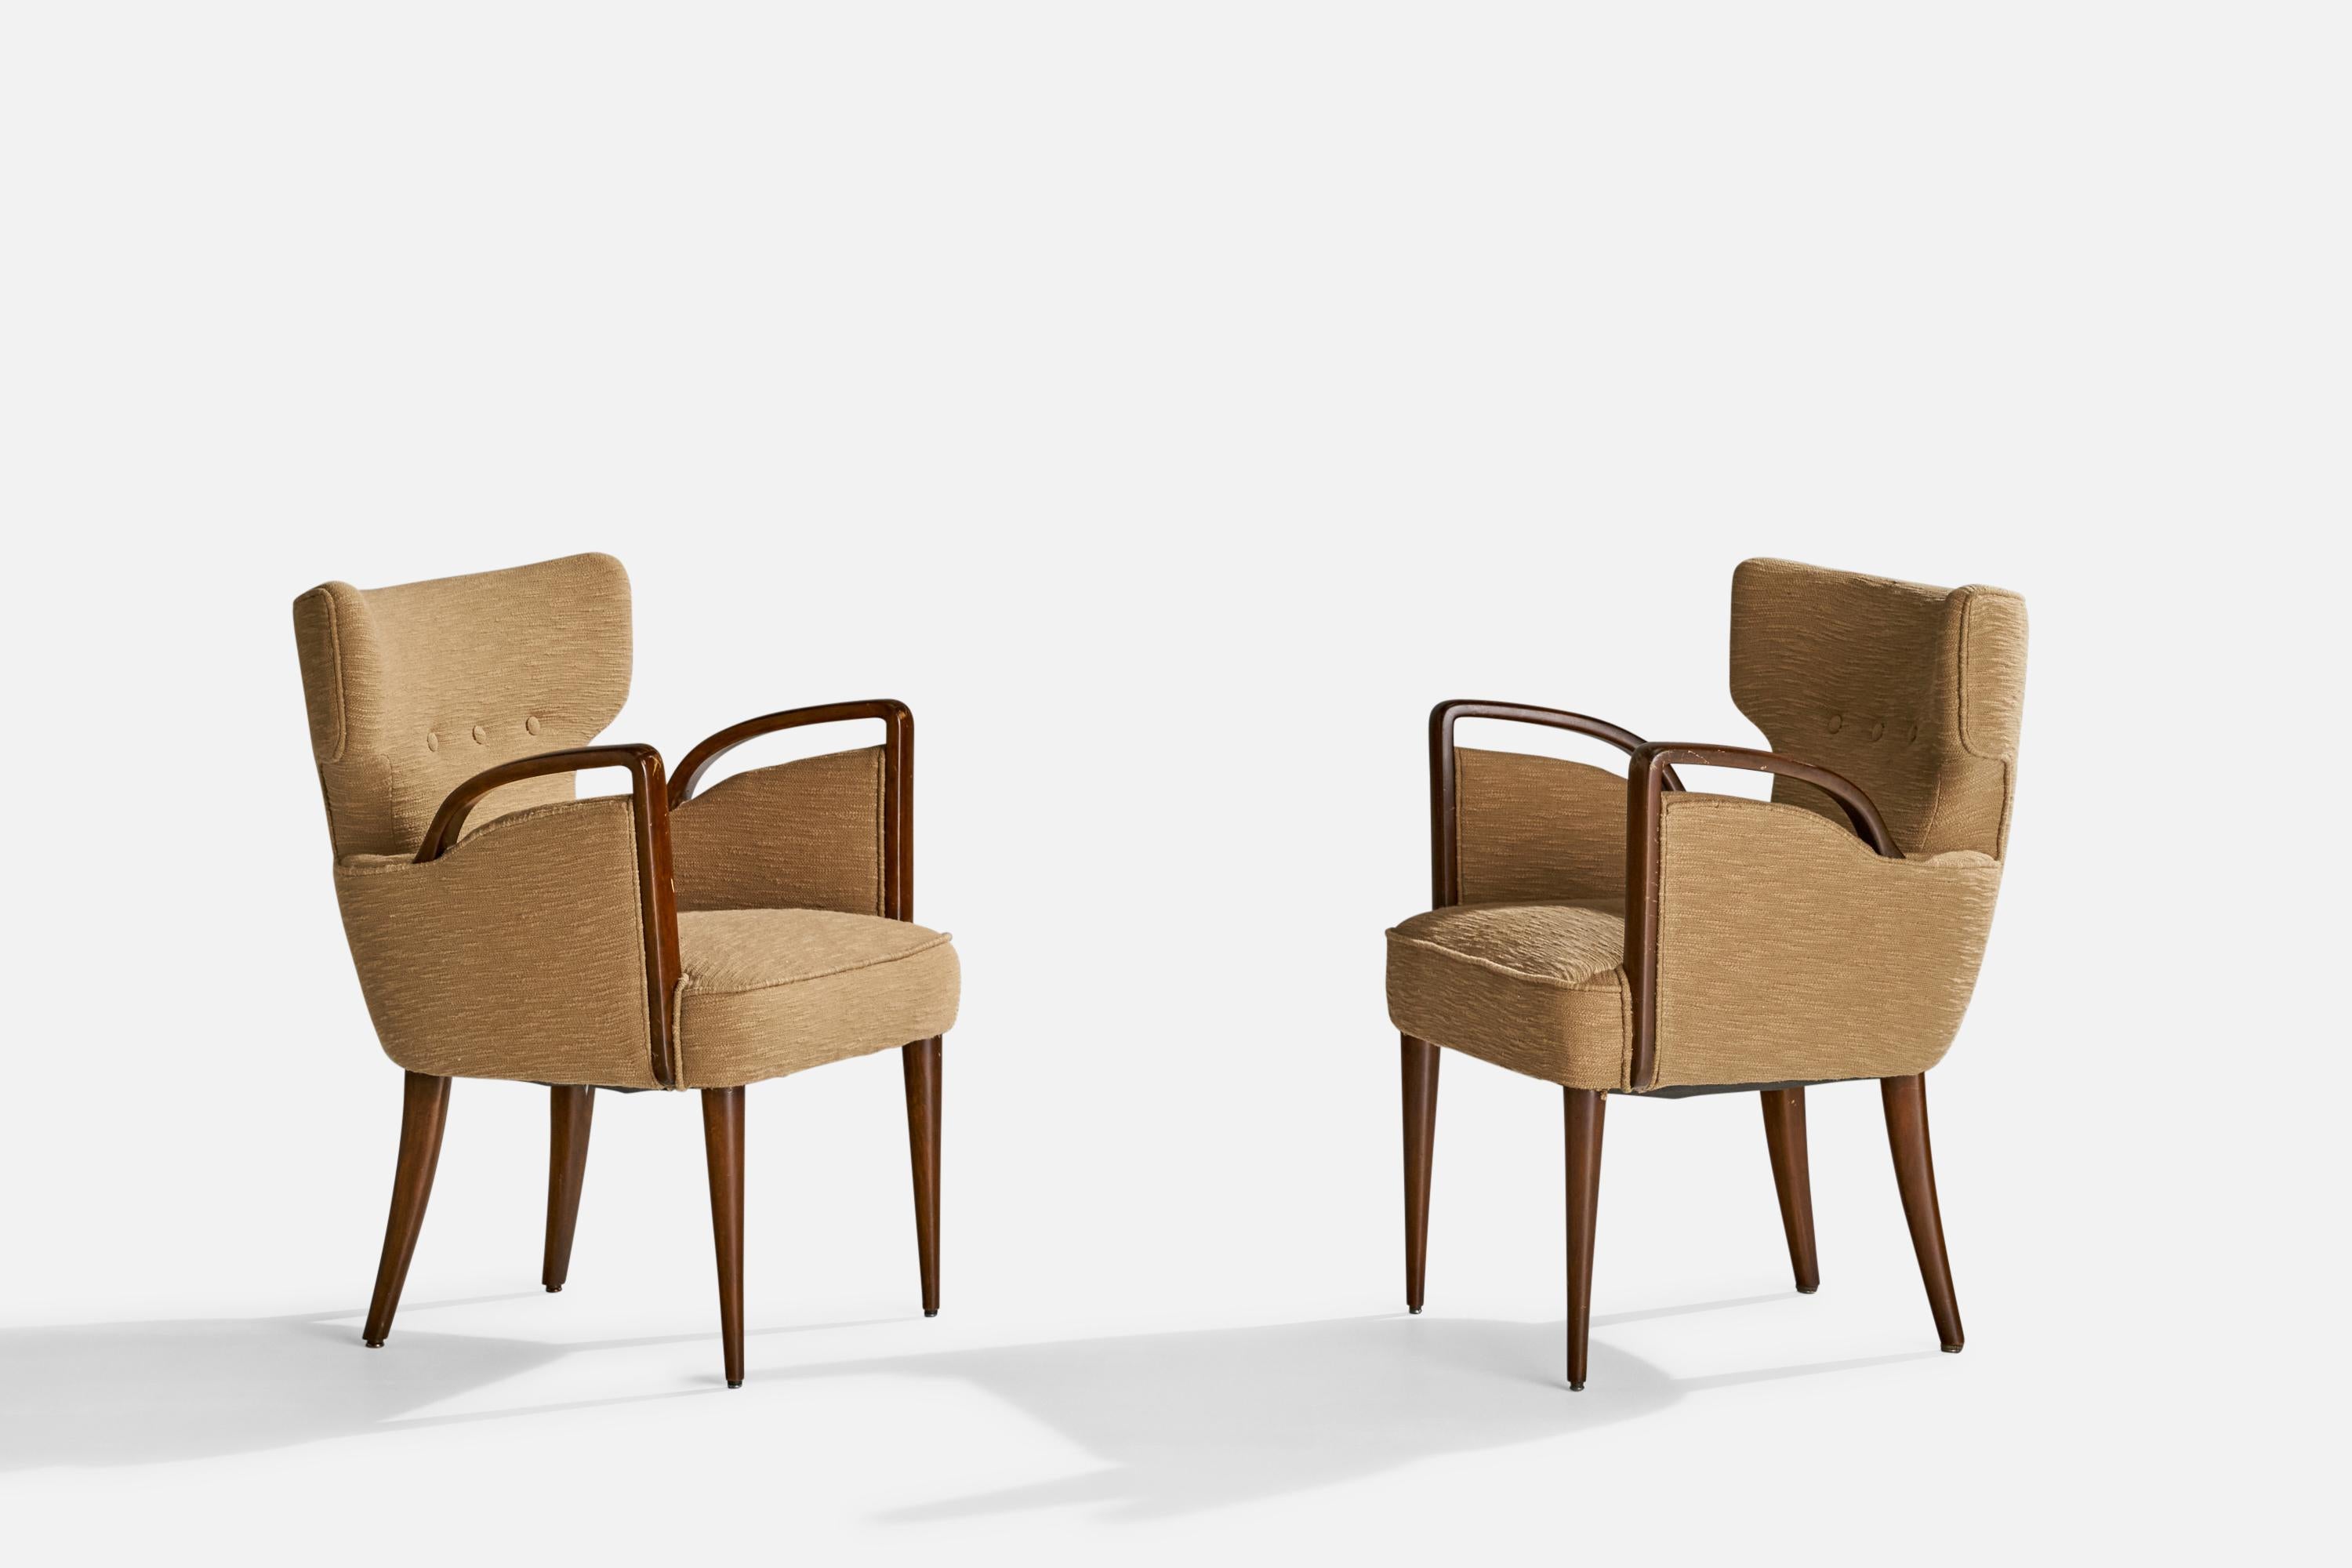 Ein Paar Sessel aus dunkel gebeiztem Holz und beigem Stoff, entworfen von Melchiorre BEGA und hergestellt von Figli Di Amadeo Cassina, Italien, um 1949.

Sitzhöhe 17